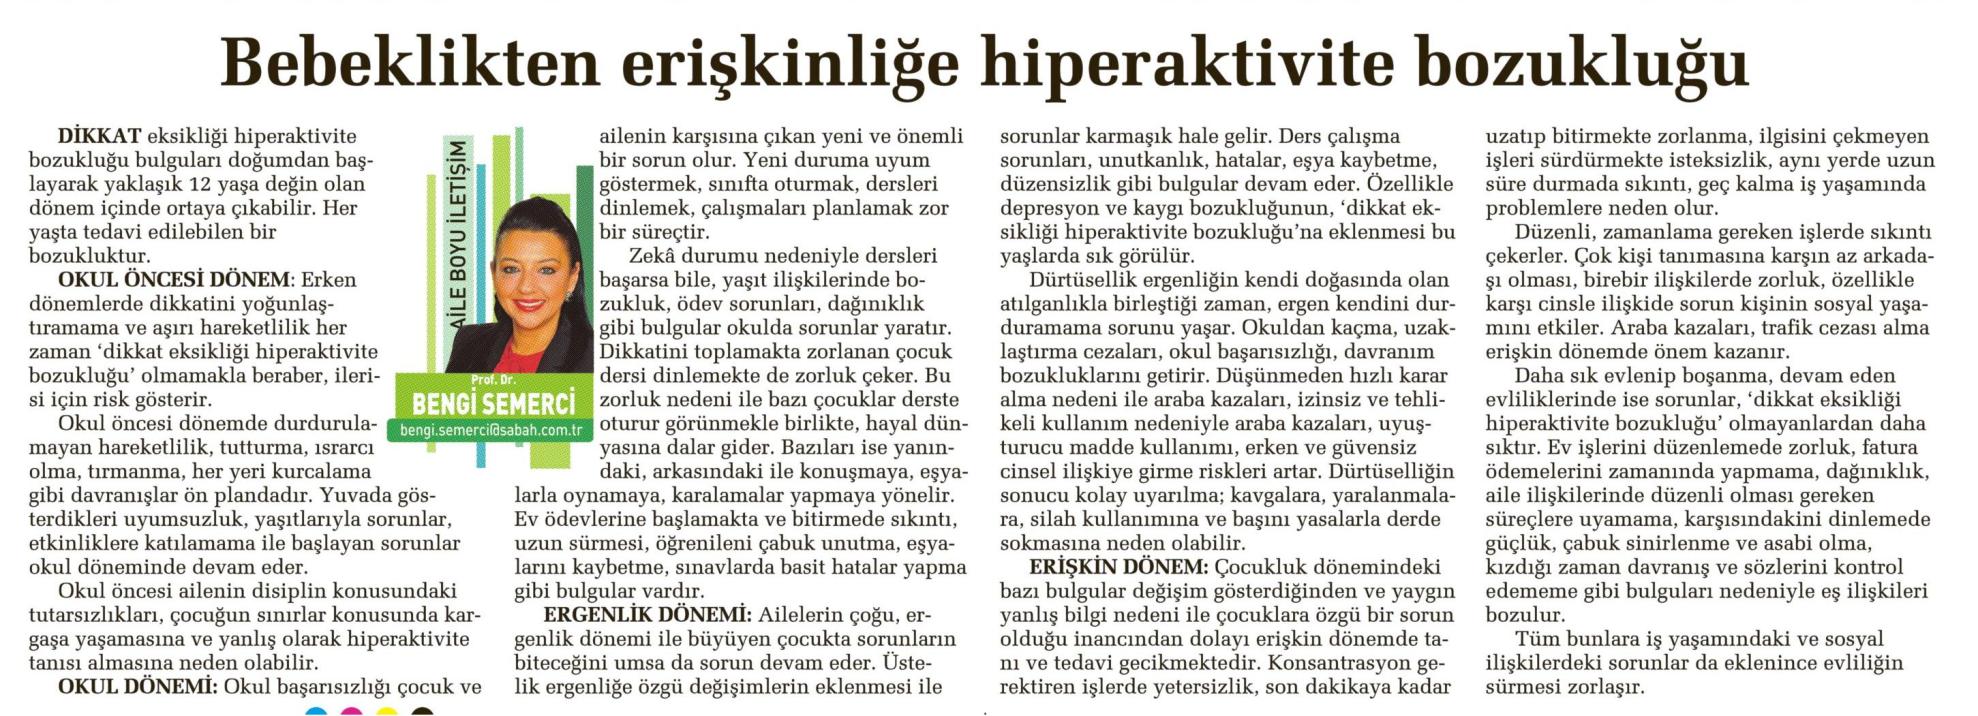 Bebeklikten erişkinliğe hiperaktivite bozukluğu - SABAH CUMARTESİ 26.04.2014